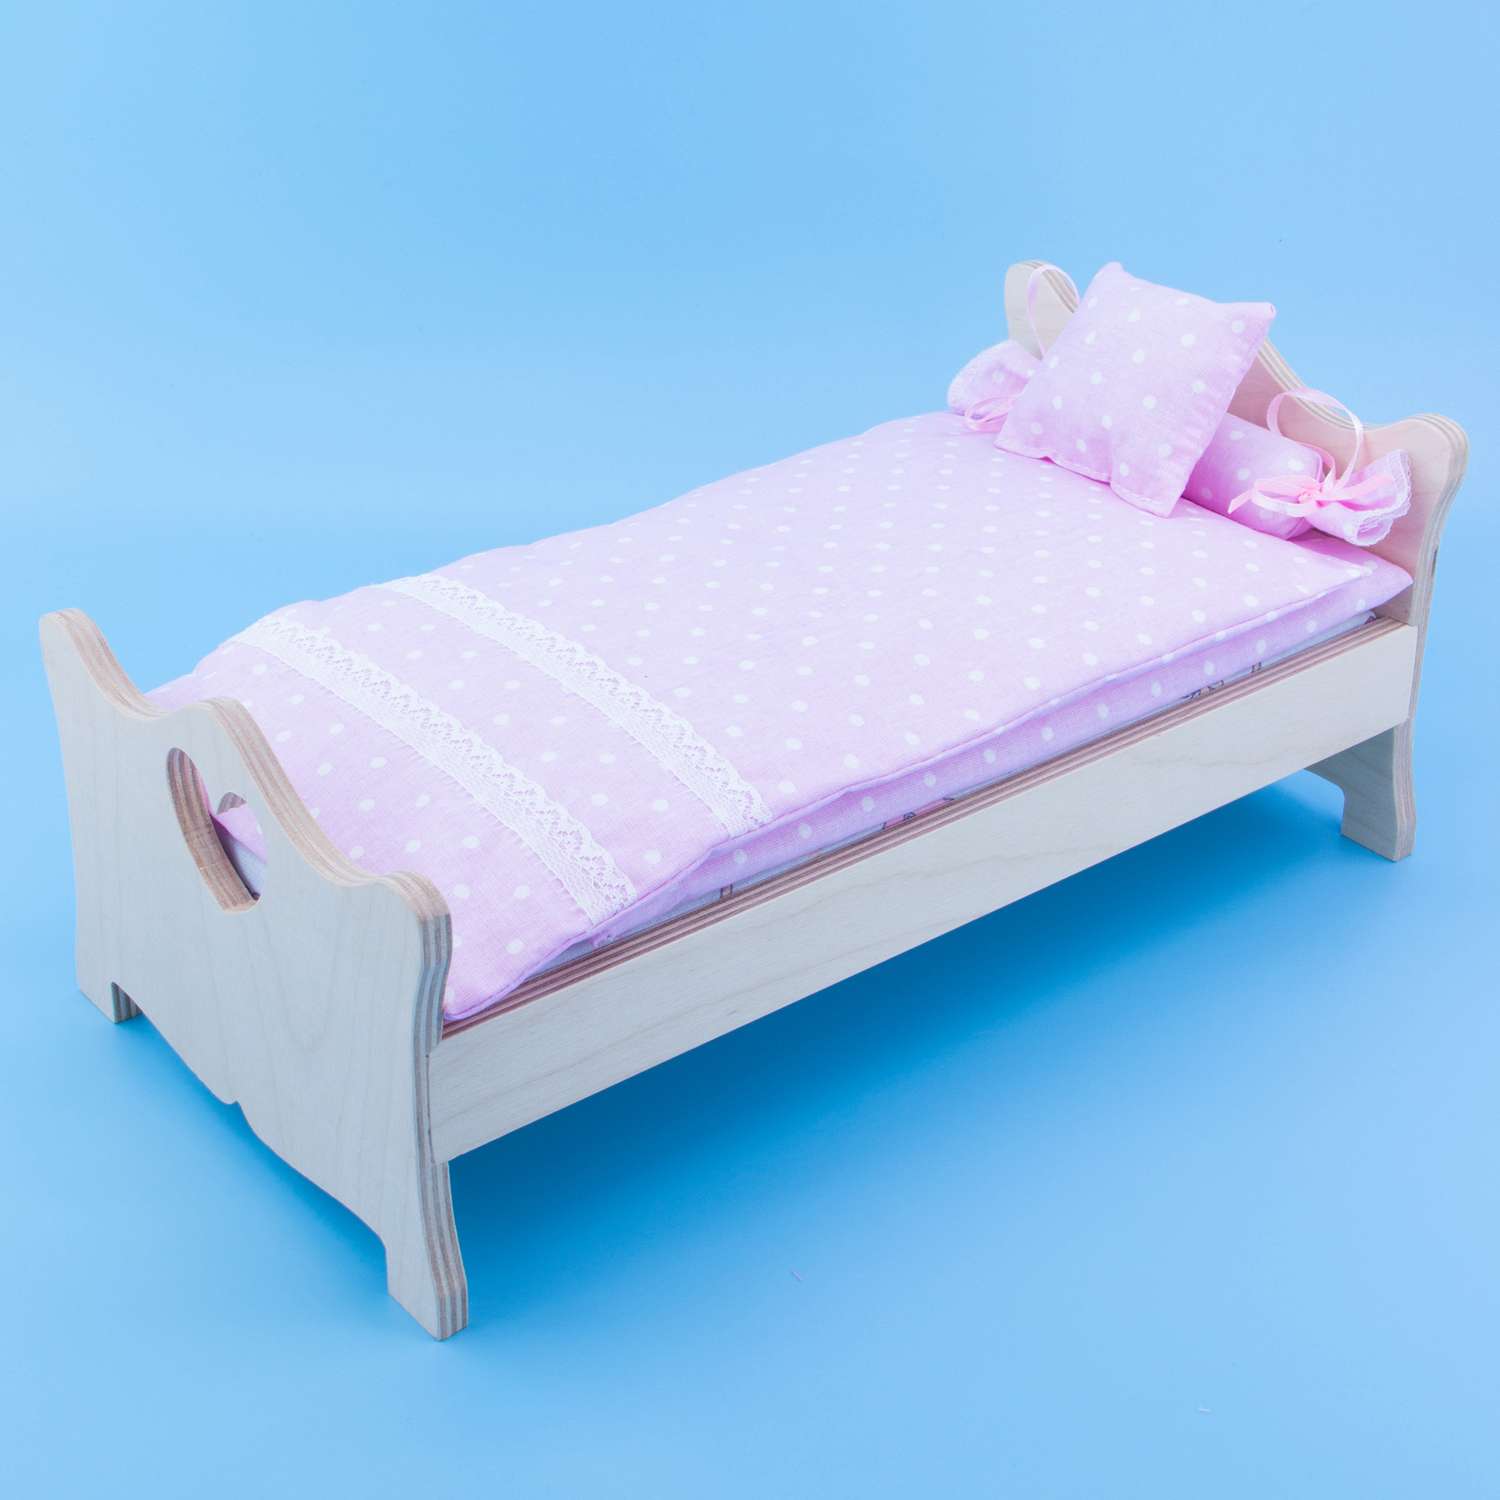 Комлпект постельного белья Модница для куклы 29 см пастельно-розовый 2002пастельно-розовый - фото 11